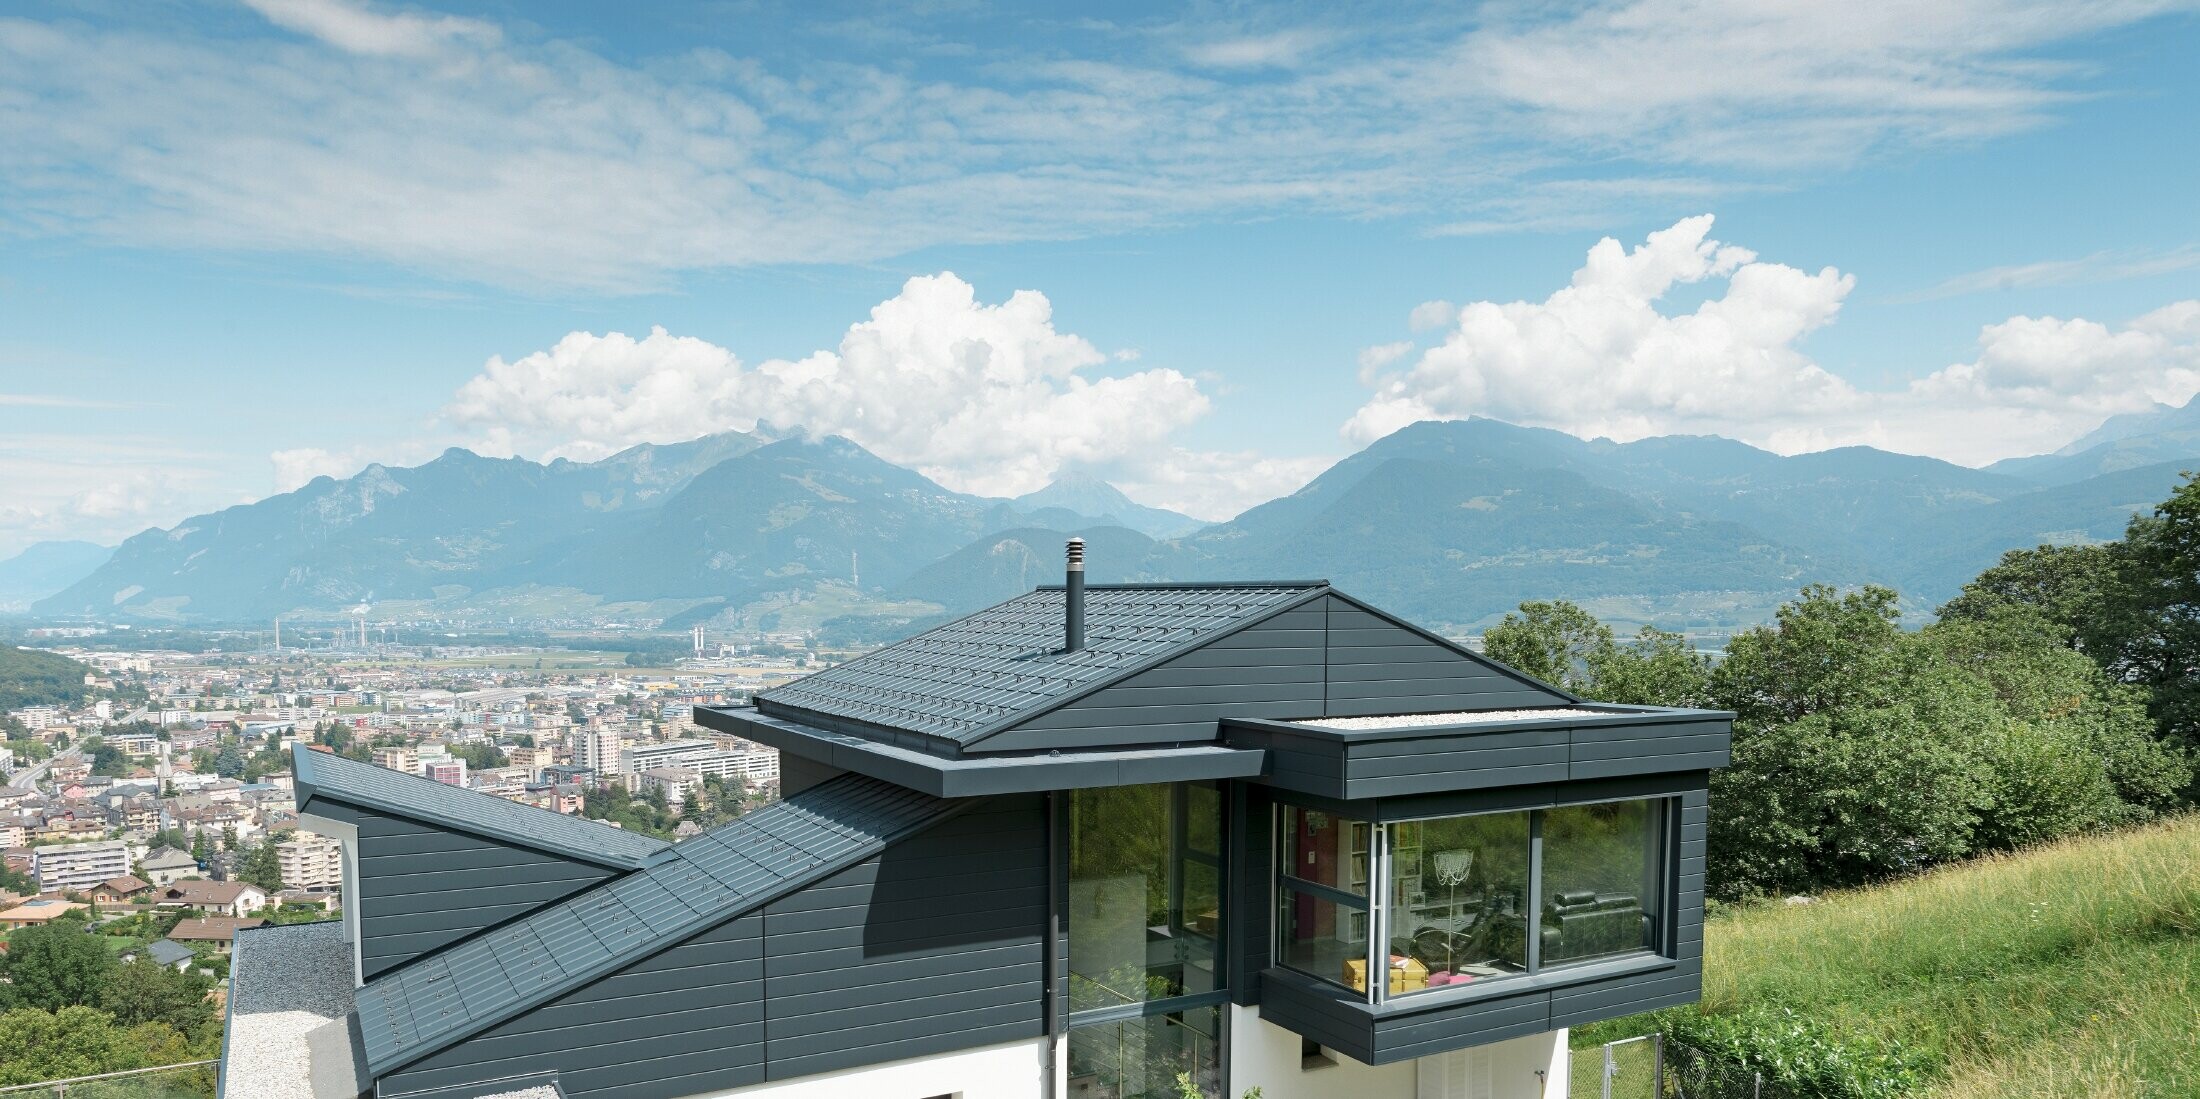 Die Fassade des Einfamilienhauses im Schweizer Ort Choëx ist mit PREFA Sidings in der Farbe P.10 Anthrazit bekleidet. Das Dach wurde mit den bewährten PREFA Dachplatten, ebenfalls in Anthrazit, gedeckt.